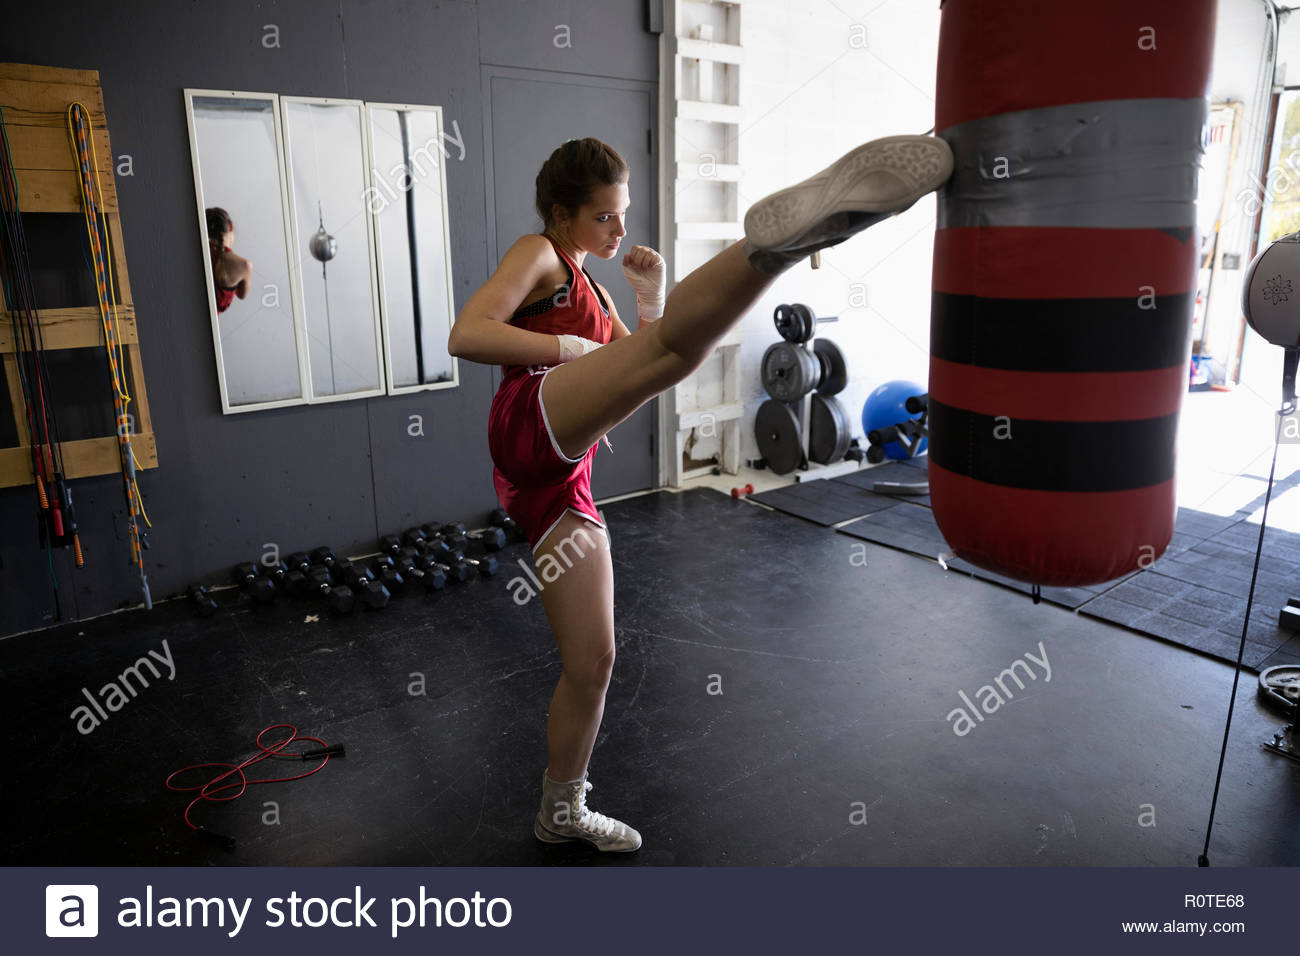 Female kickboxer kicking punching bag in gym Stock Photo